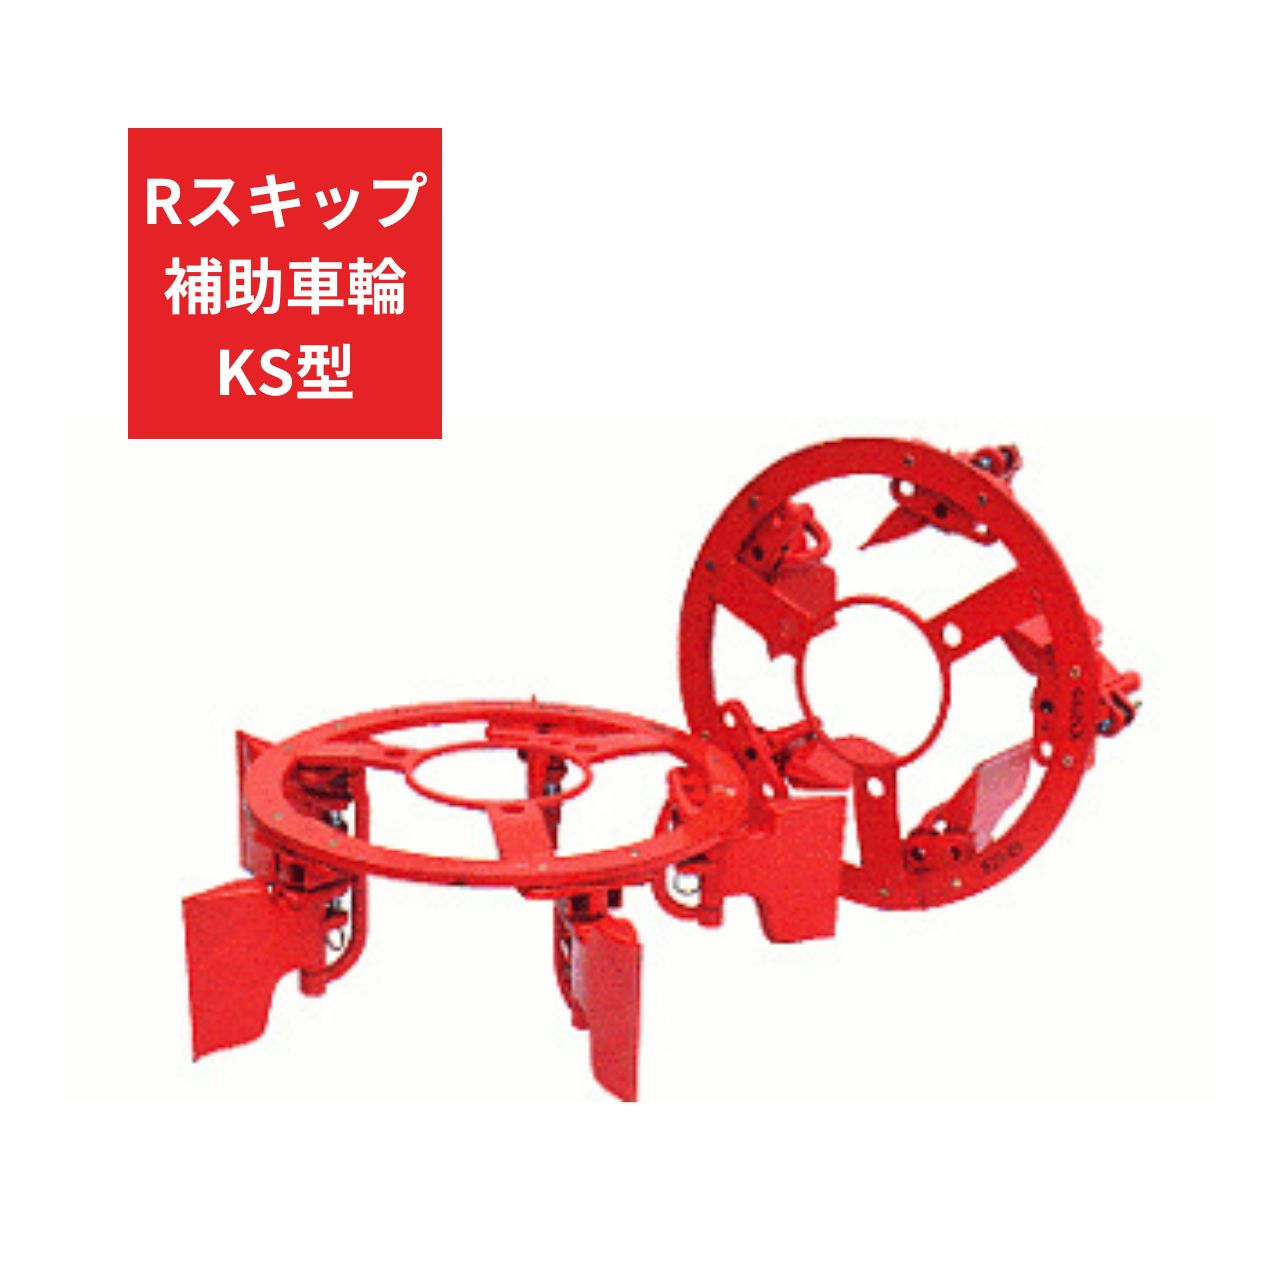 トラクター用 補助車輪 KS車輪 Rスキップ補助車輪KS ジョーニシ RKS210 8.3-26 通販